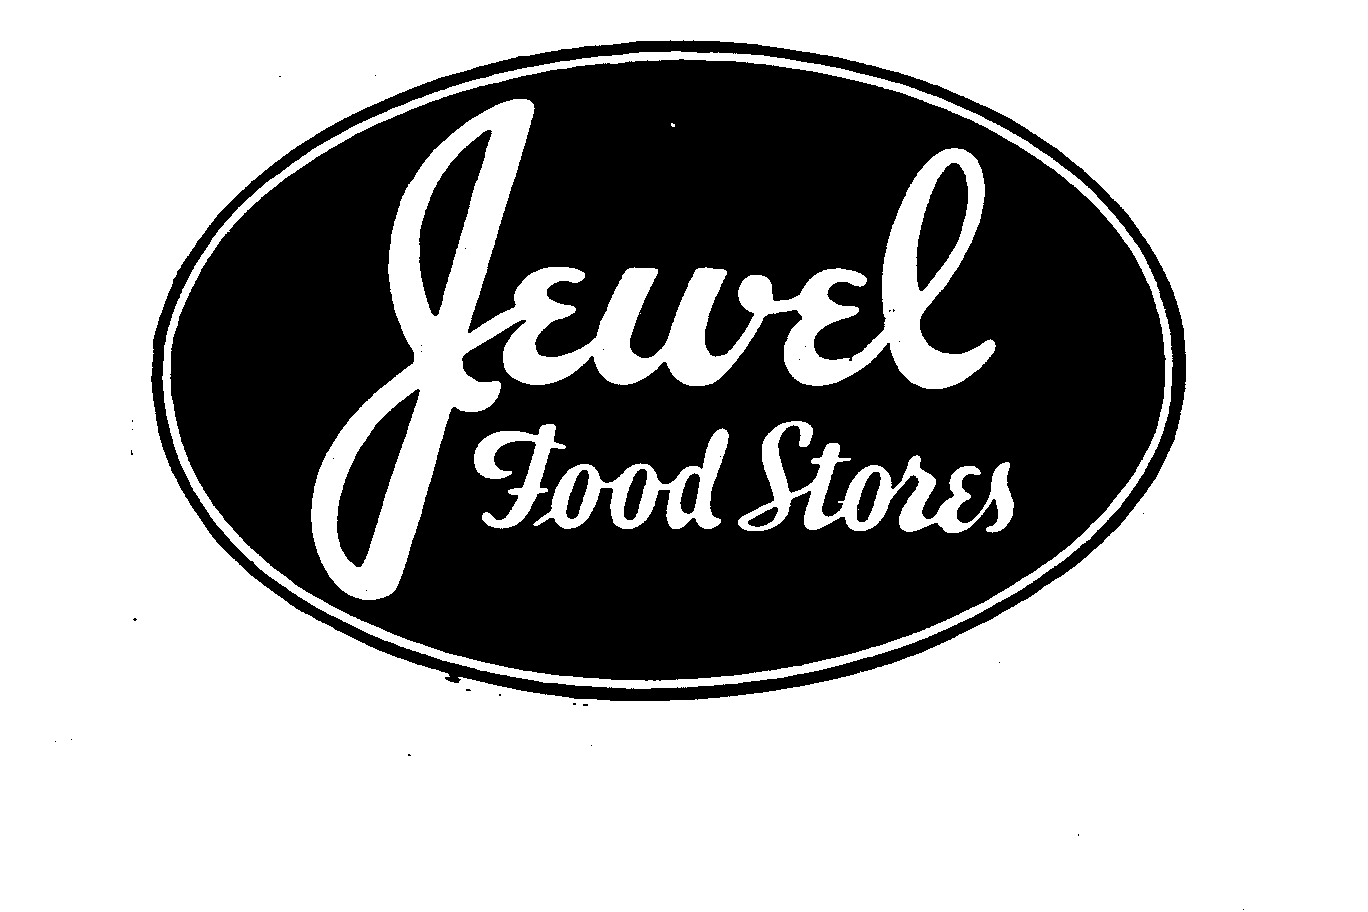  JEWEL FOOD STORES